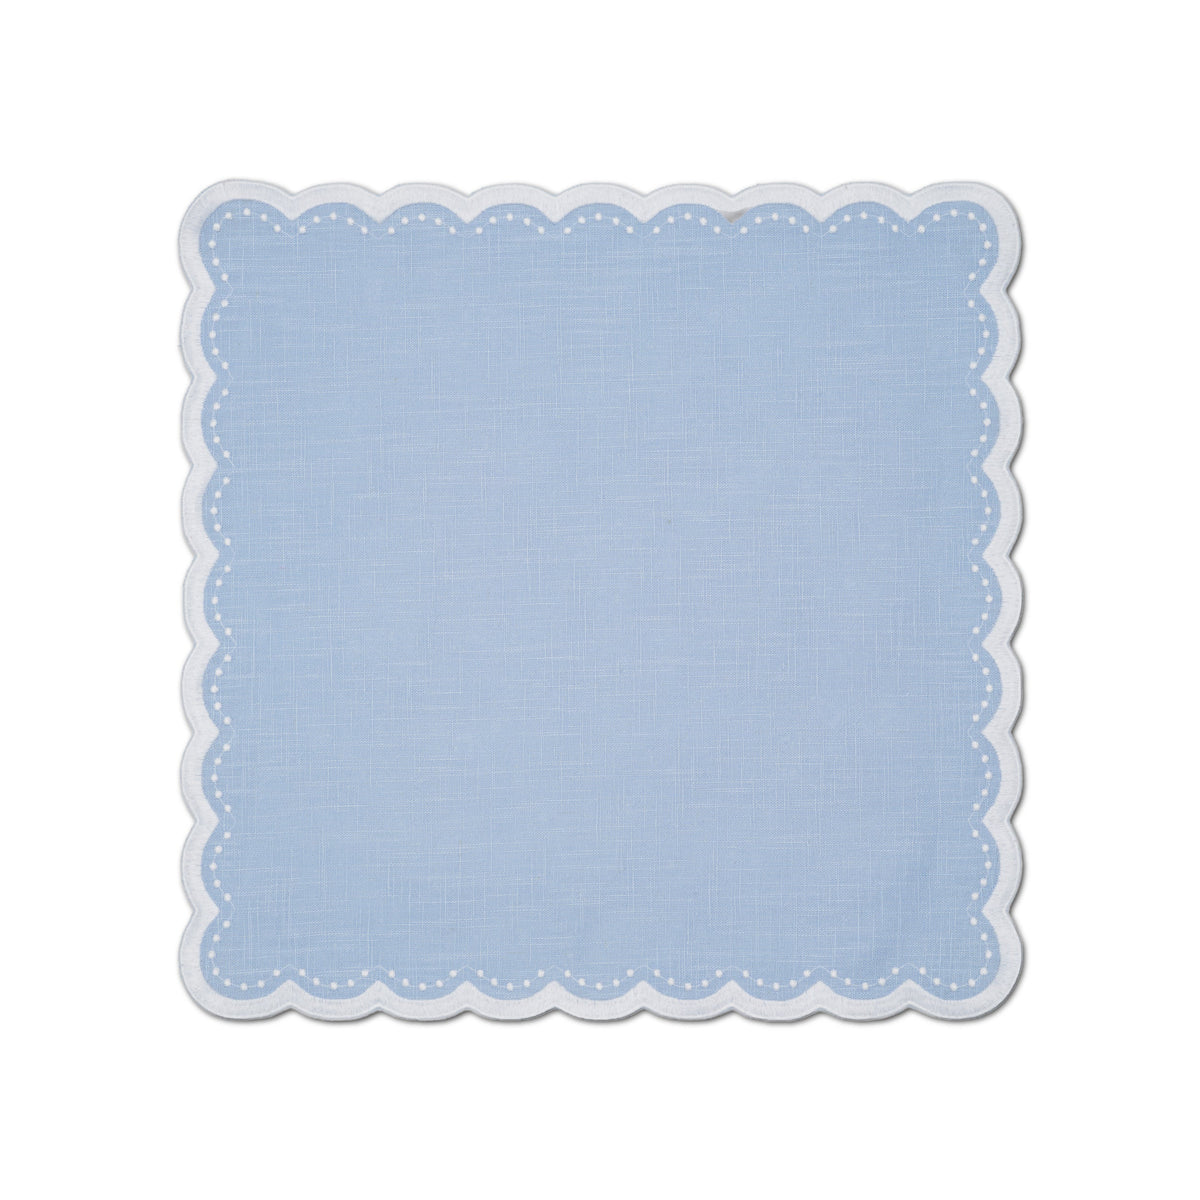 Bluebell Napkin in Light Blue, Set of 4